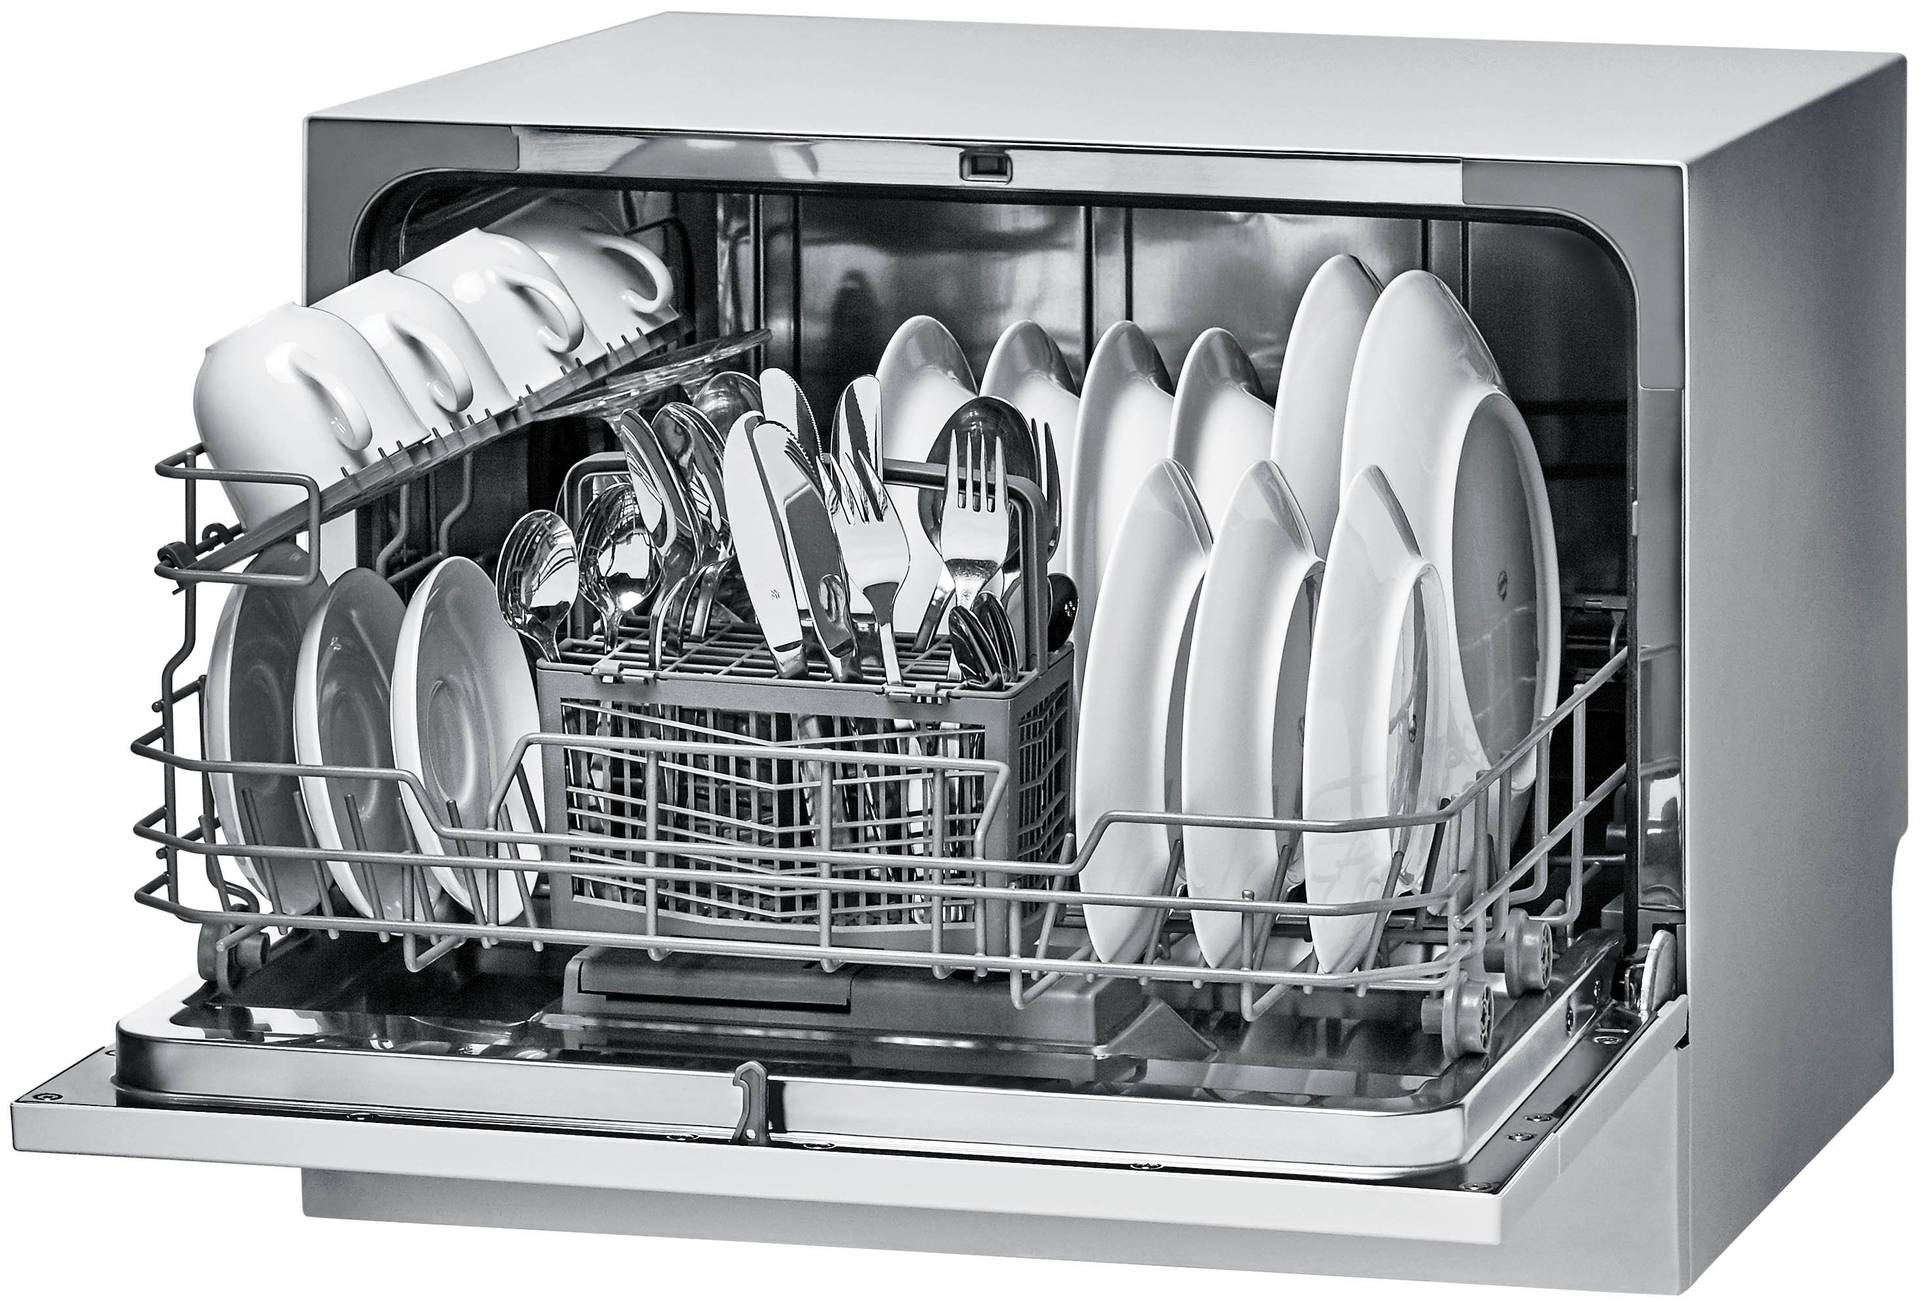 8 популярных посудомоек на 6 комплектов от различных брендов: обзор, отзывы